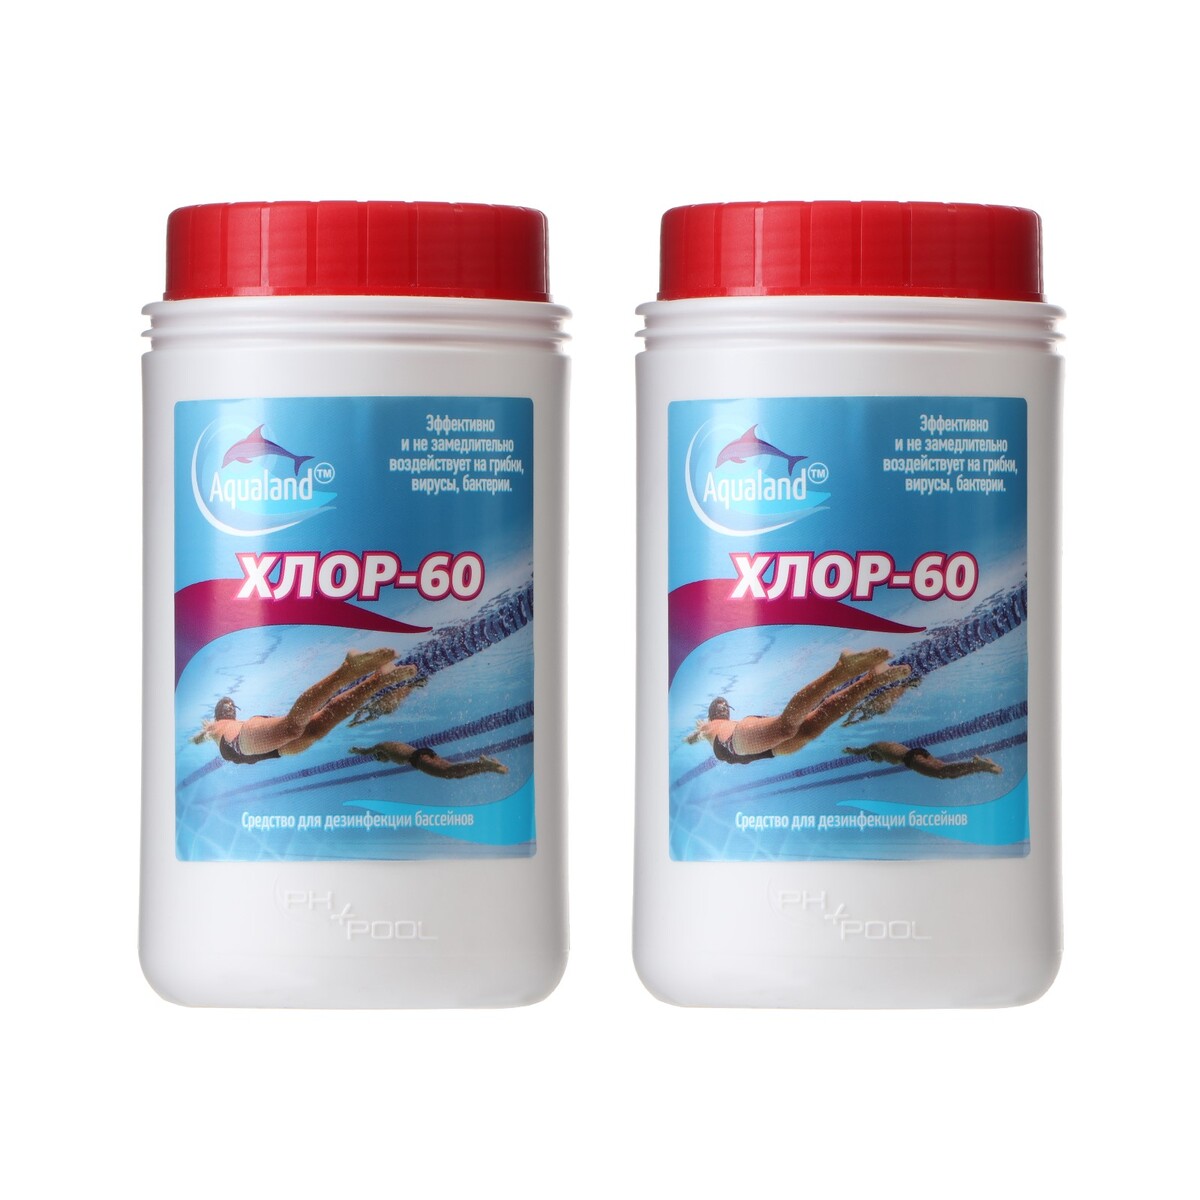 Дезинфицирующее средство aqualand хлор-60, по 1 кг, набор 2 шт дезинфицирующее средство